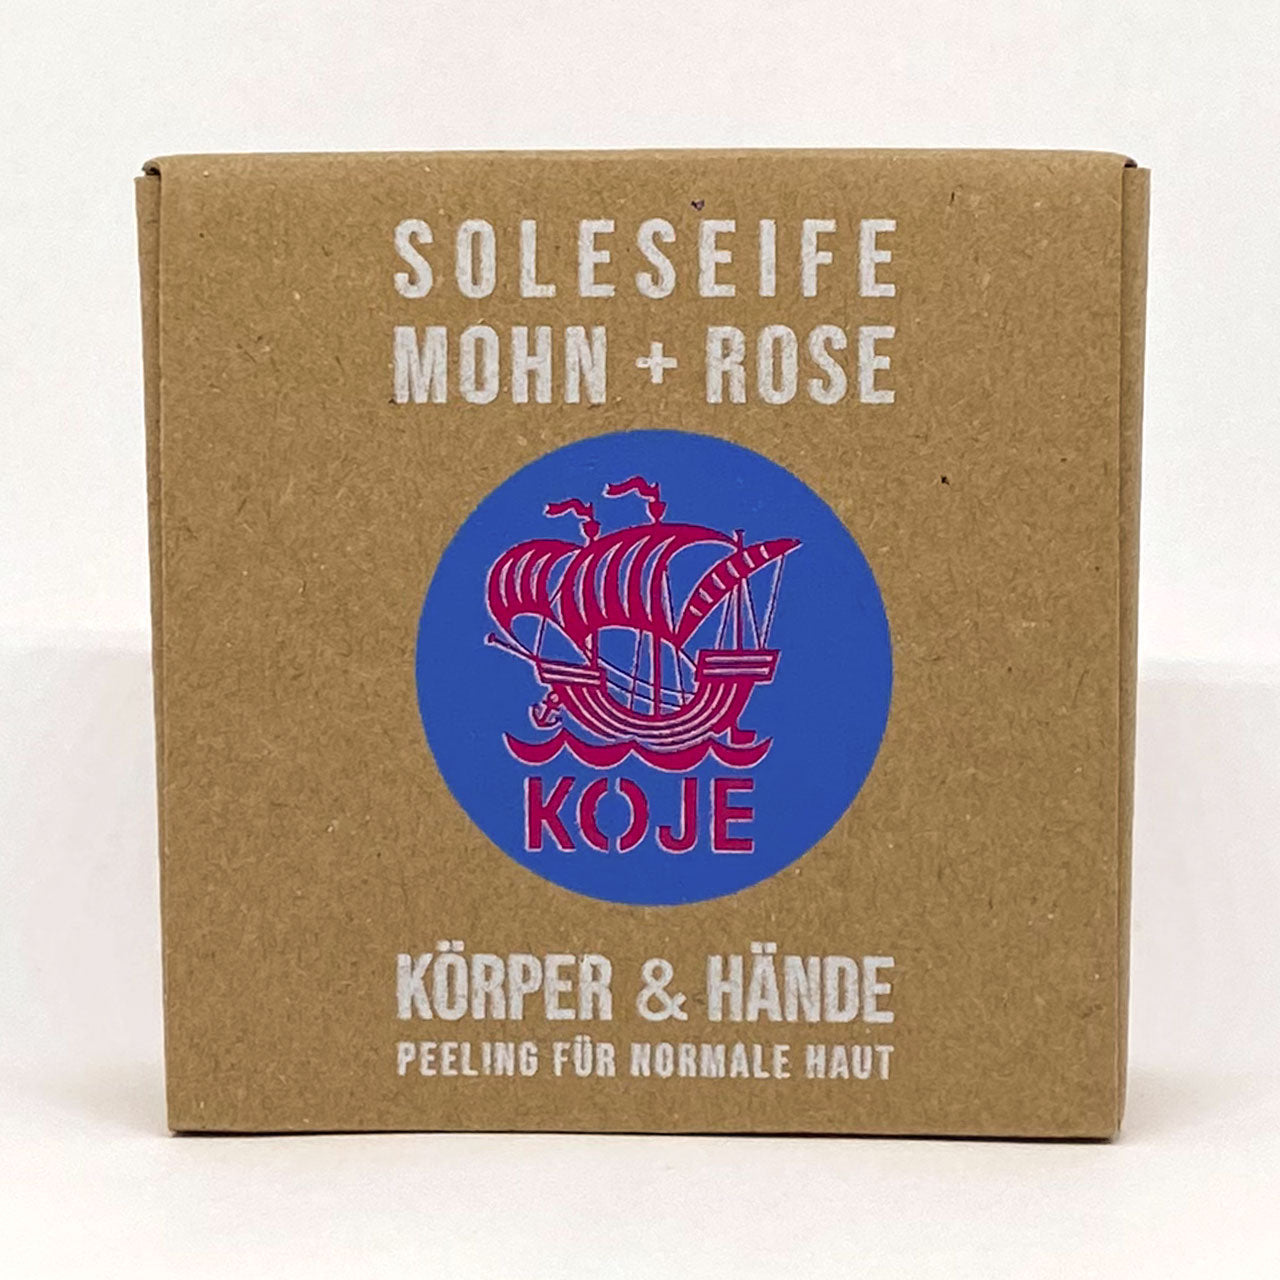 Hand- und Körperseife "Soleseife Mohn & Rose", handgesiedet  – 100g